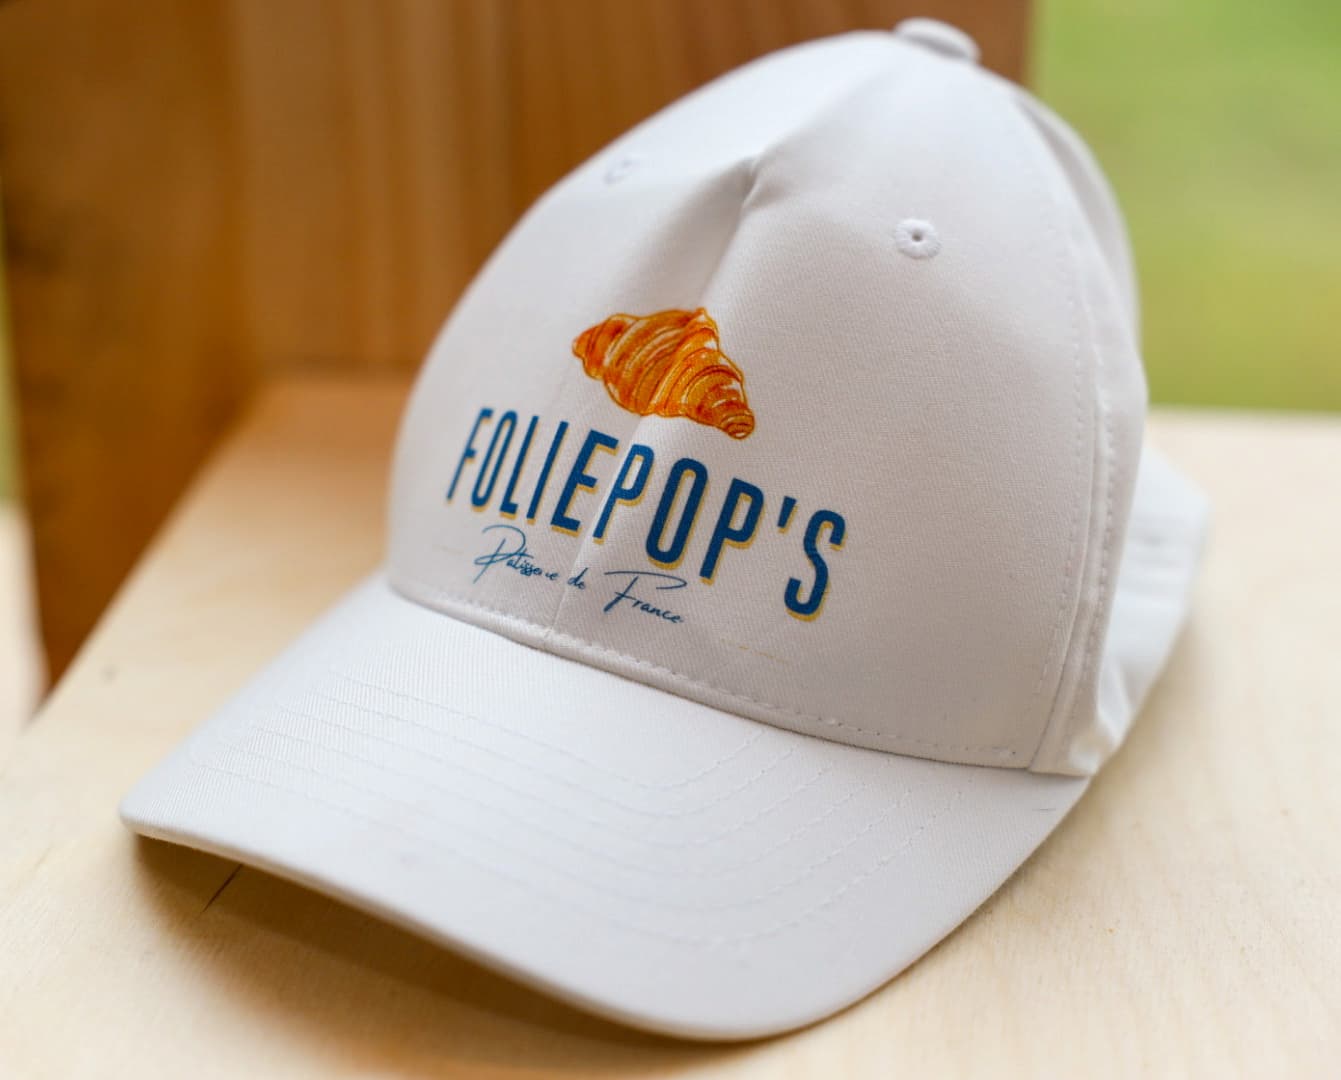 Foliepop's hat